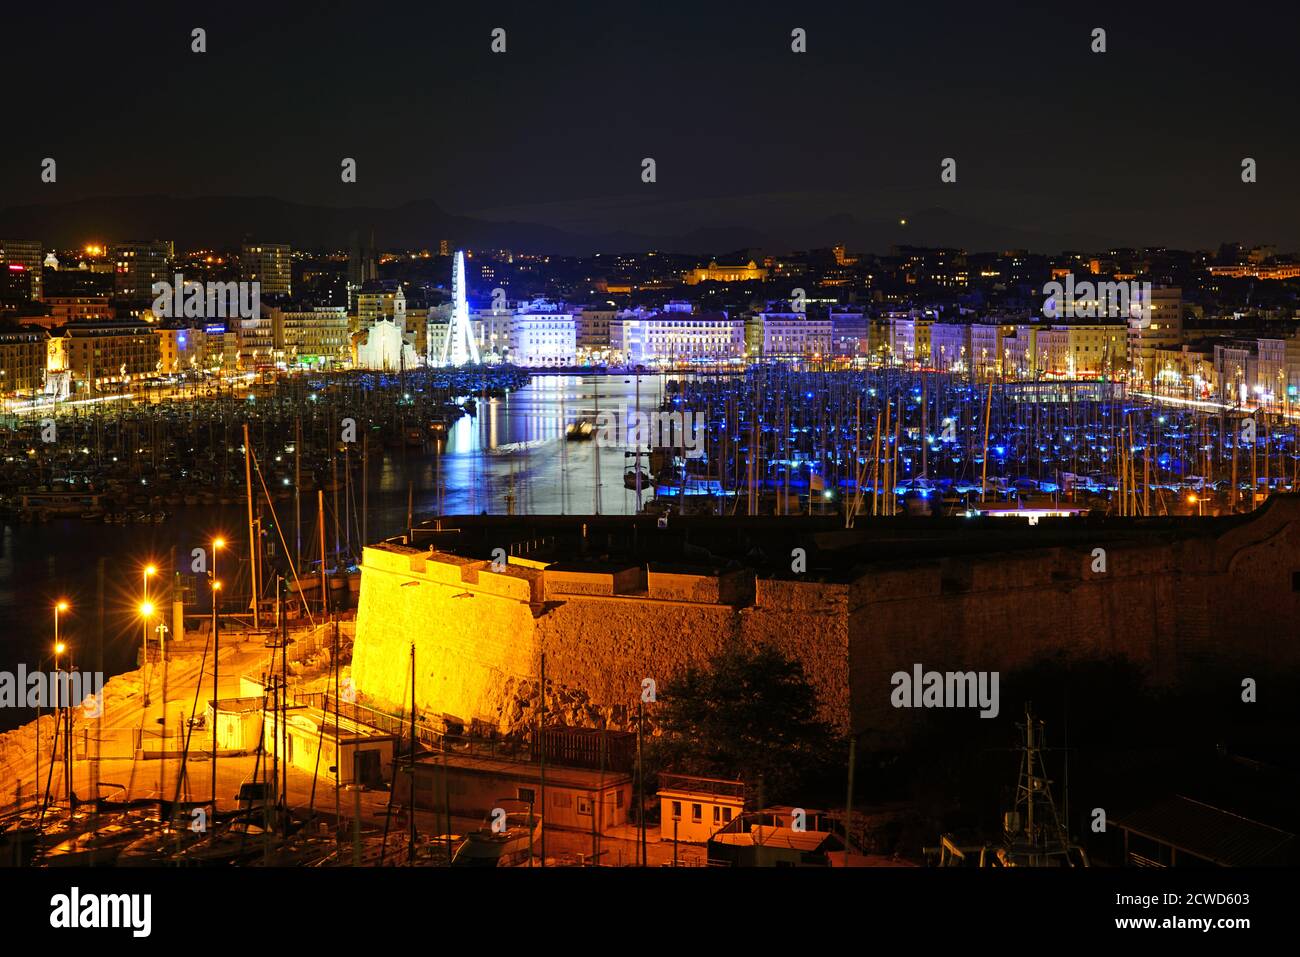 MARSEILLE, FRANCE -13 NOV 2019 - vue de nuit des bateaux dans le site touristique Vieux Port (vieux port) et le port de plaisance de Marseille, France. Banque D'Images